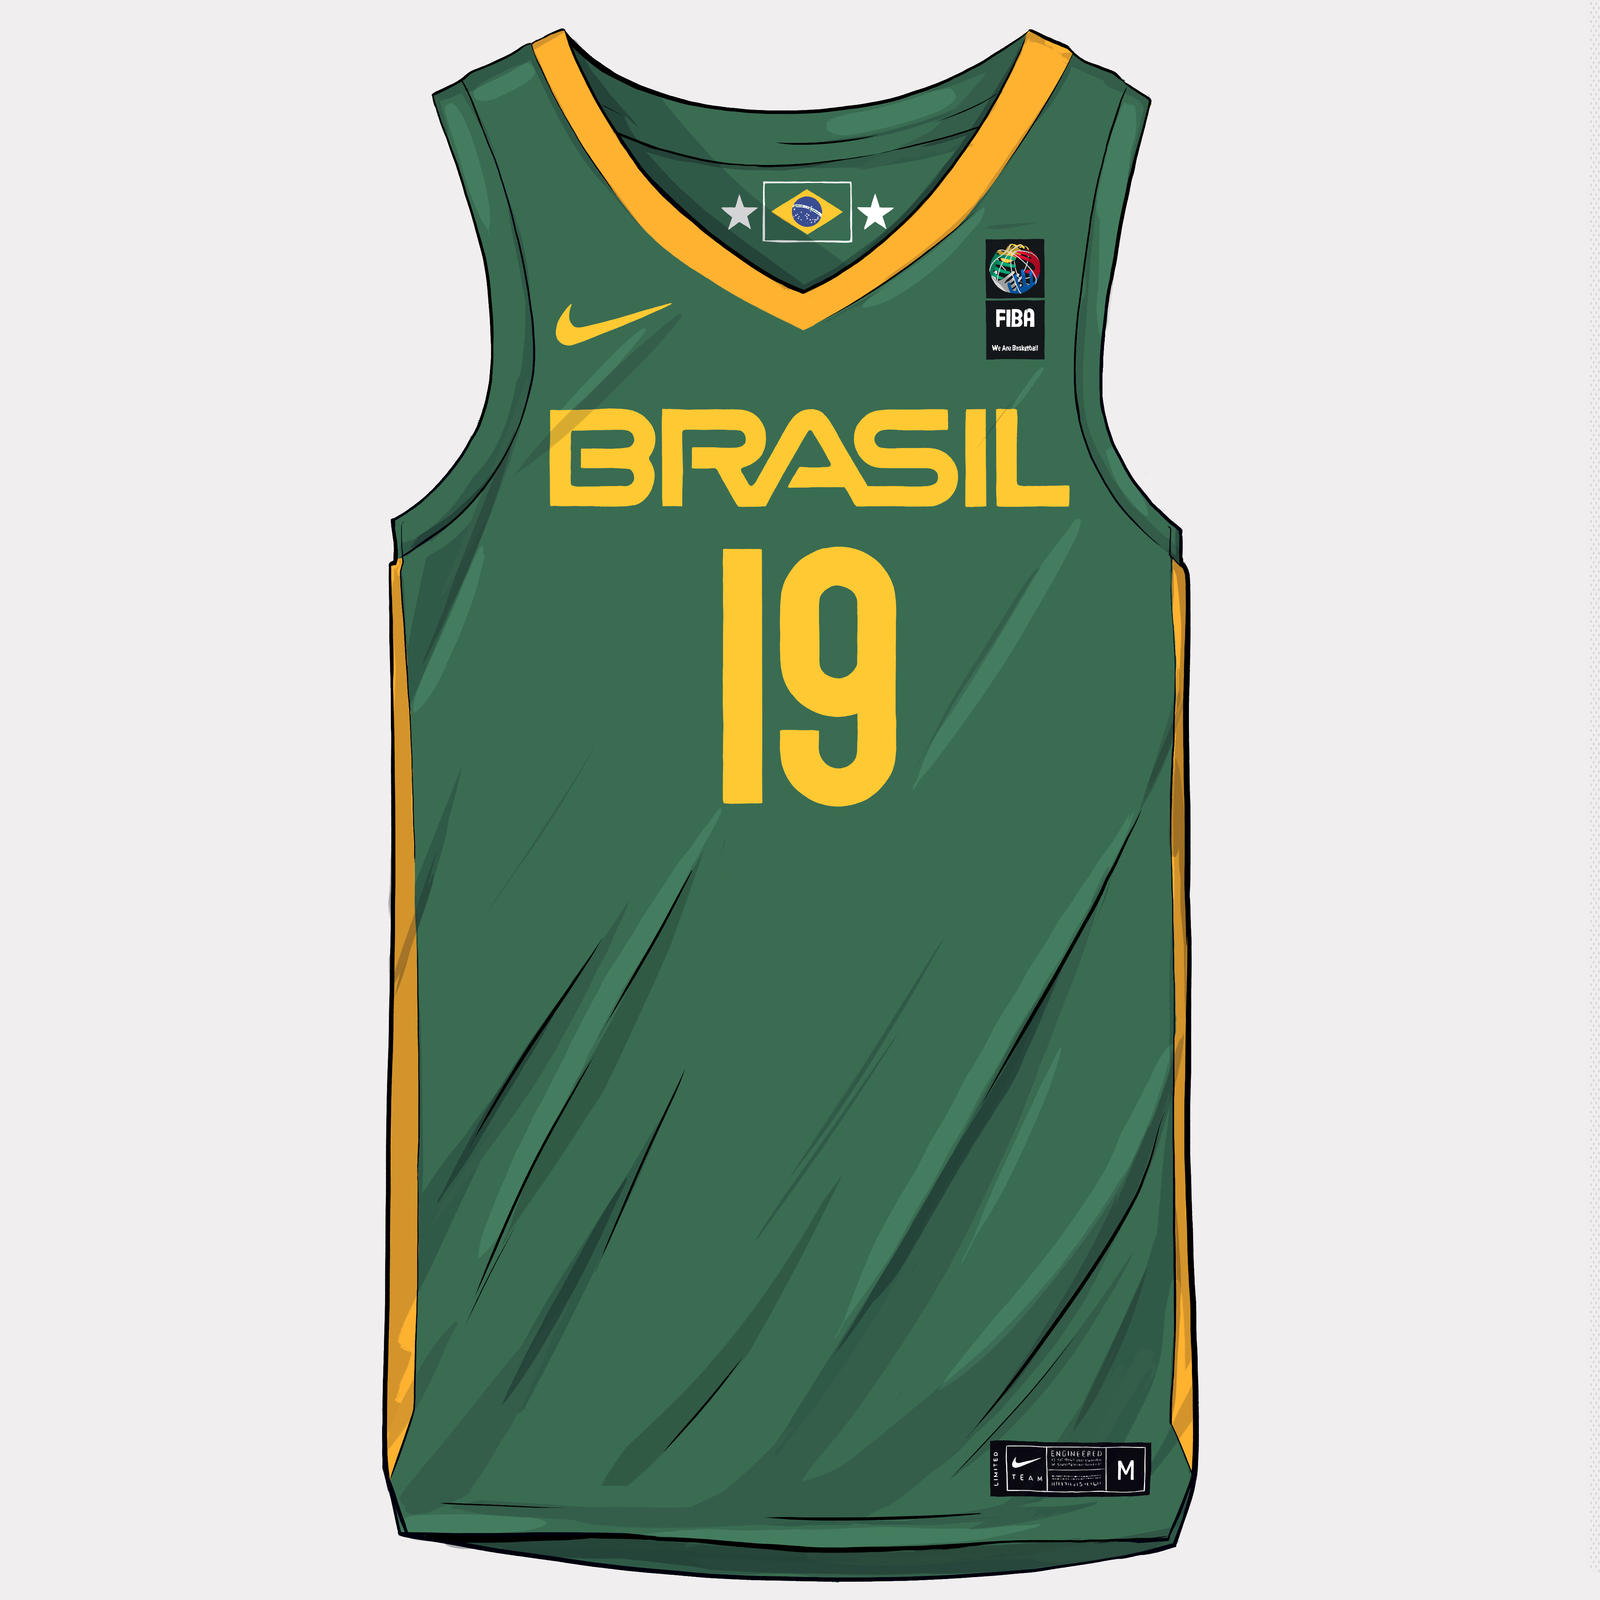 nike-news-brasil-national-team-kit-2019-illustration-1x1_1_square_1600.jpg